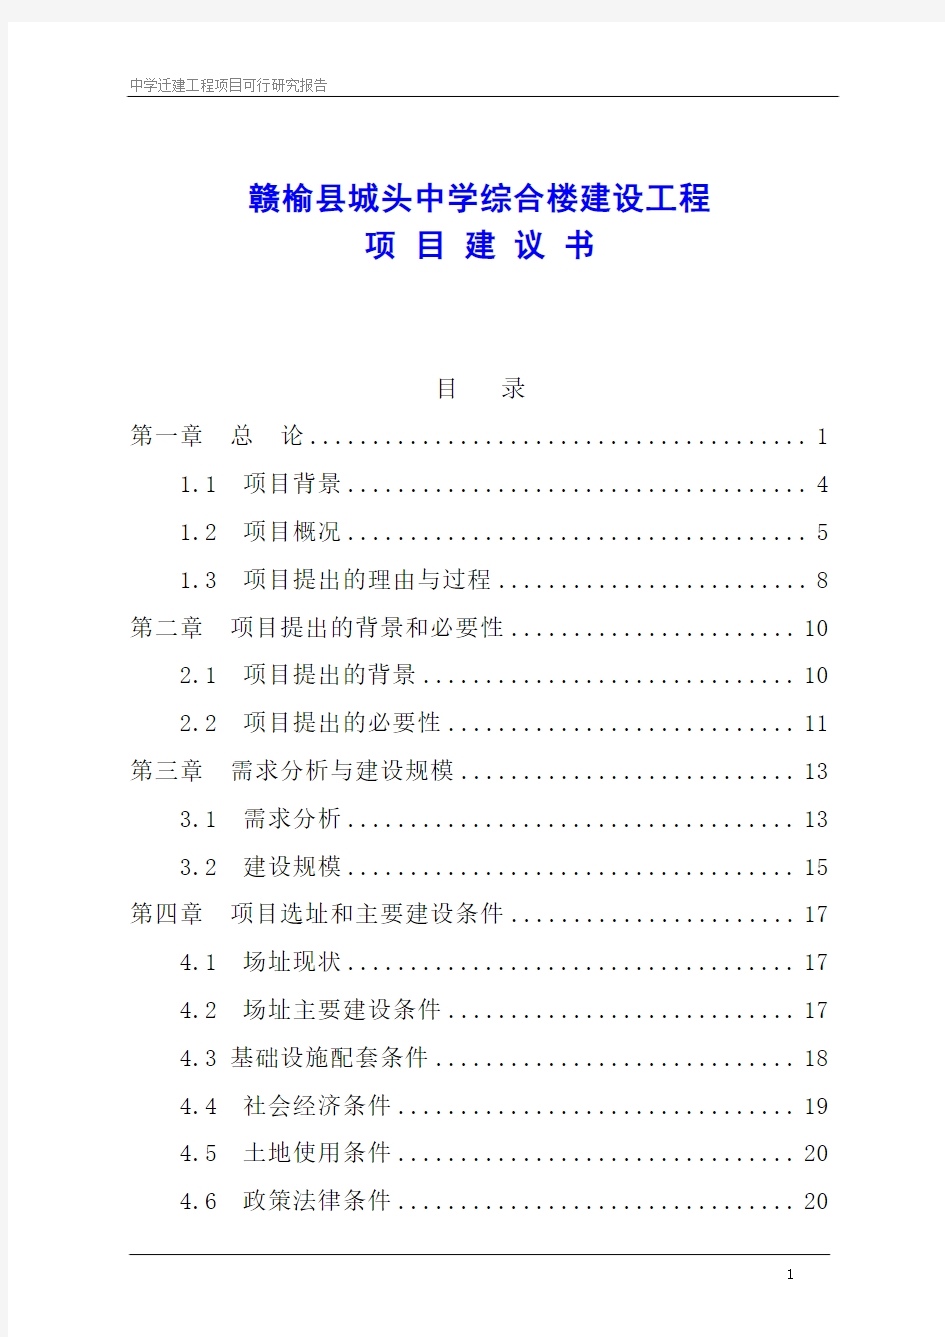 赣榆县城头中学综合楼建设工程项目建议书